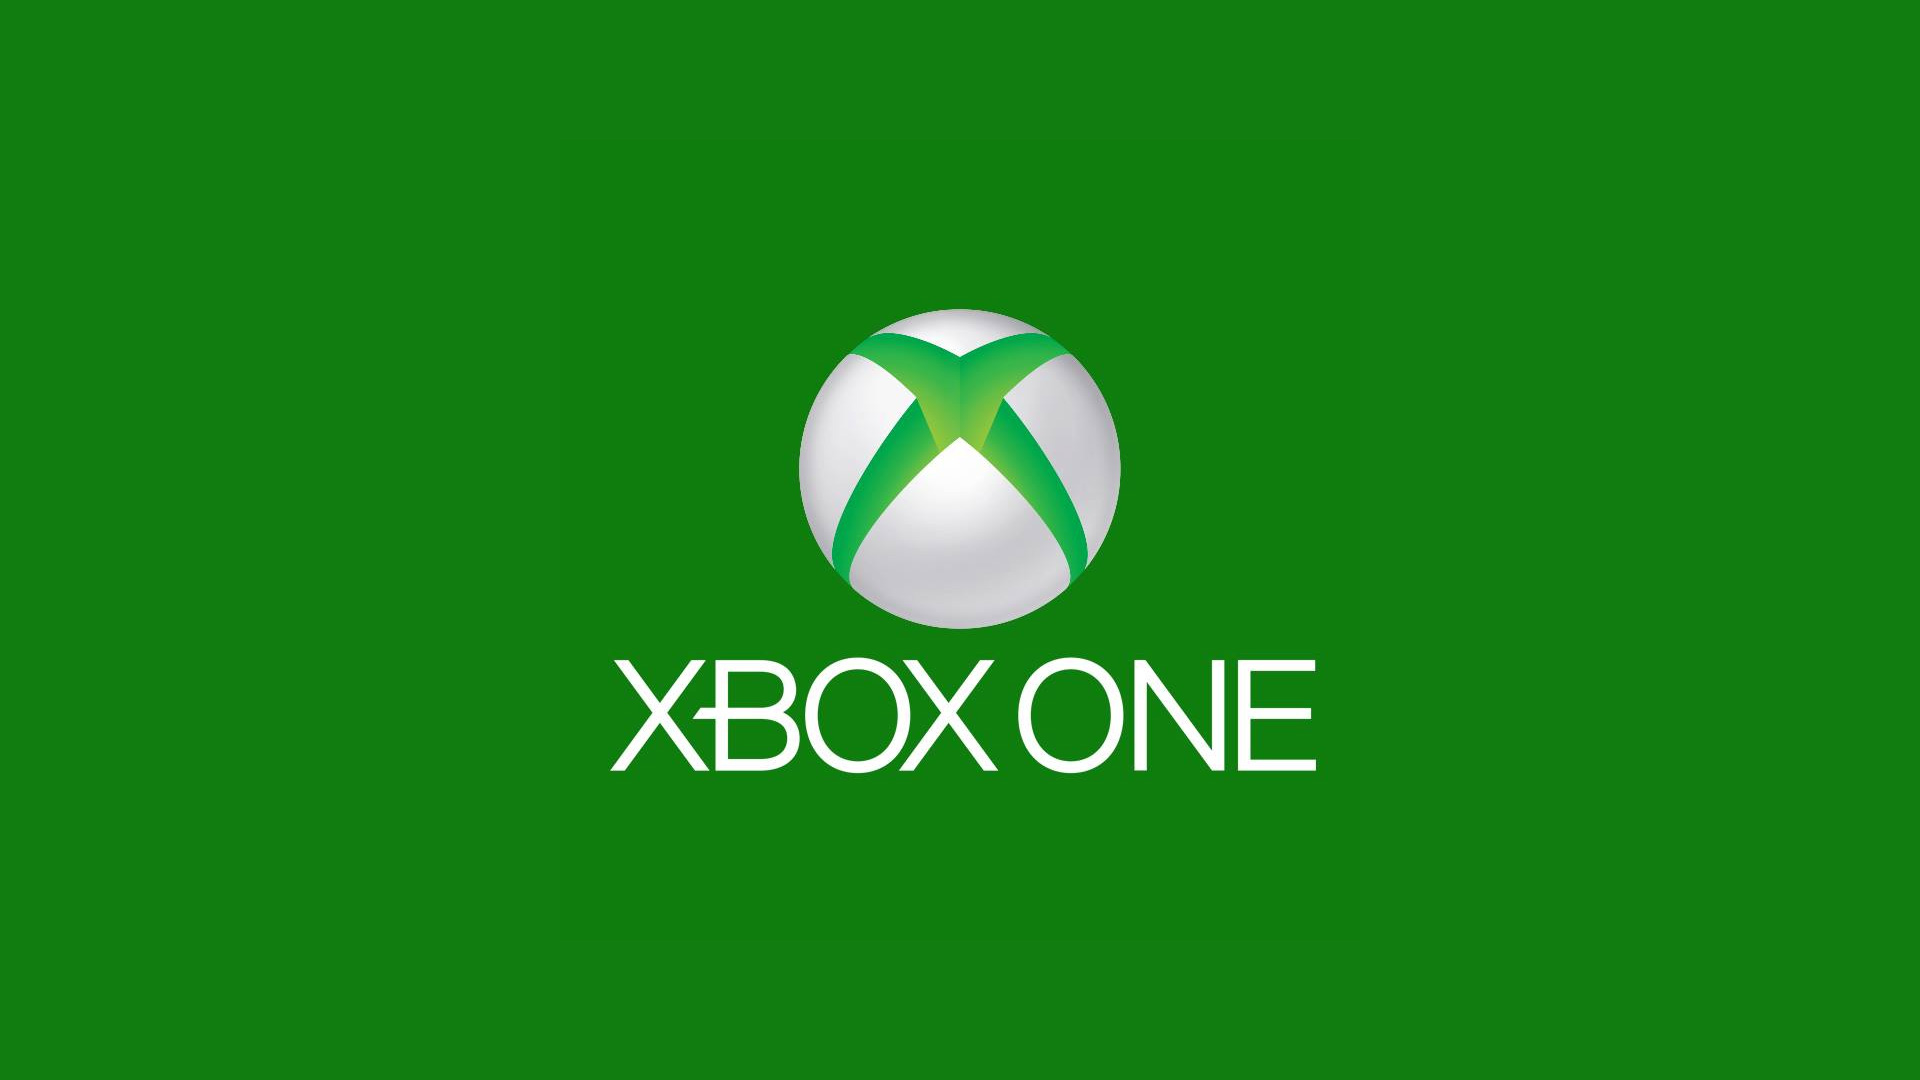 Xbox One Logo 1080p Wallpaper Xbox One Logo 720p Wallpaper